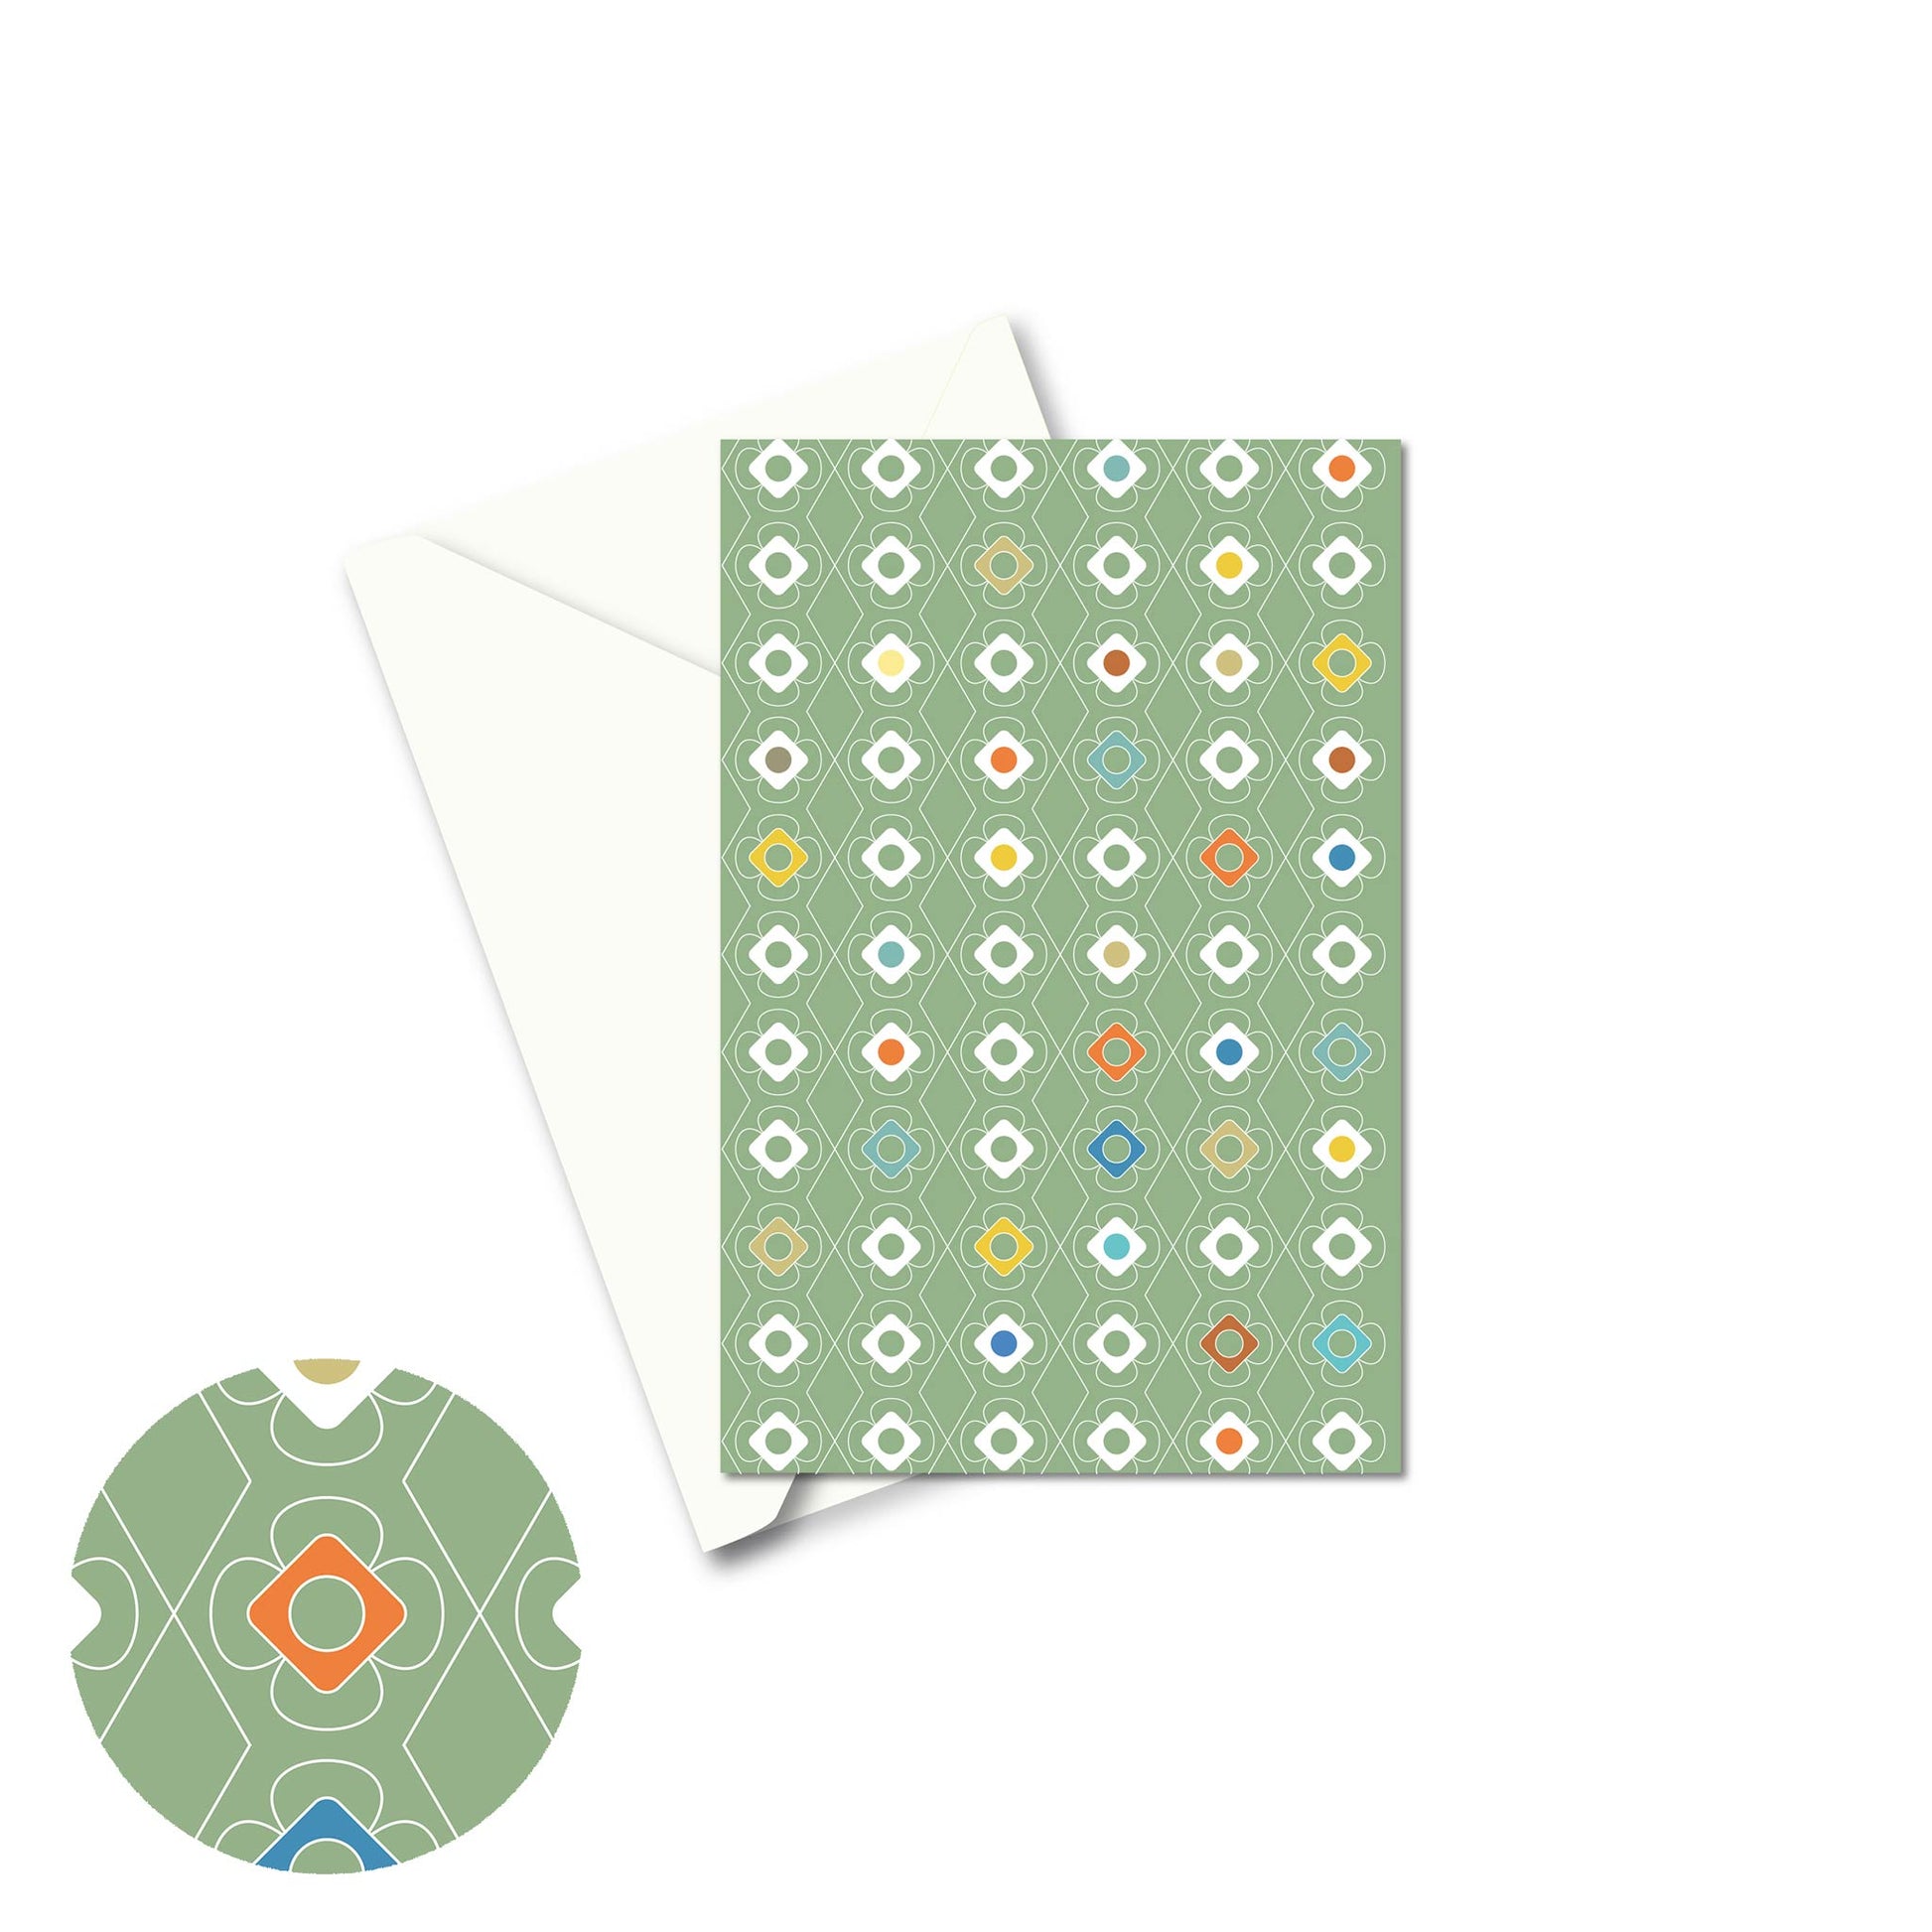 Productafbeelding, wenskaart "kleur carrousel groen", de voorzijde met een envelop